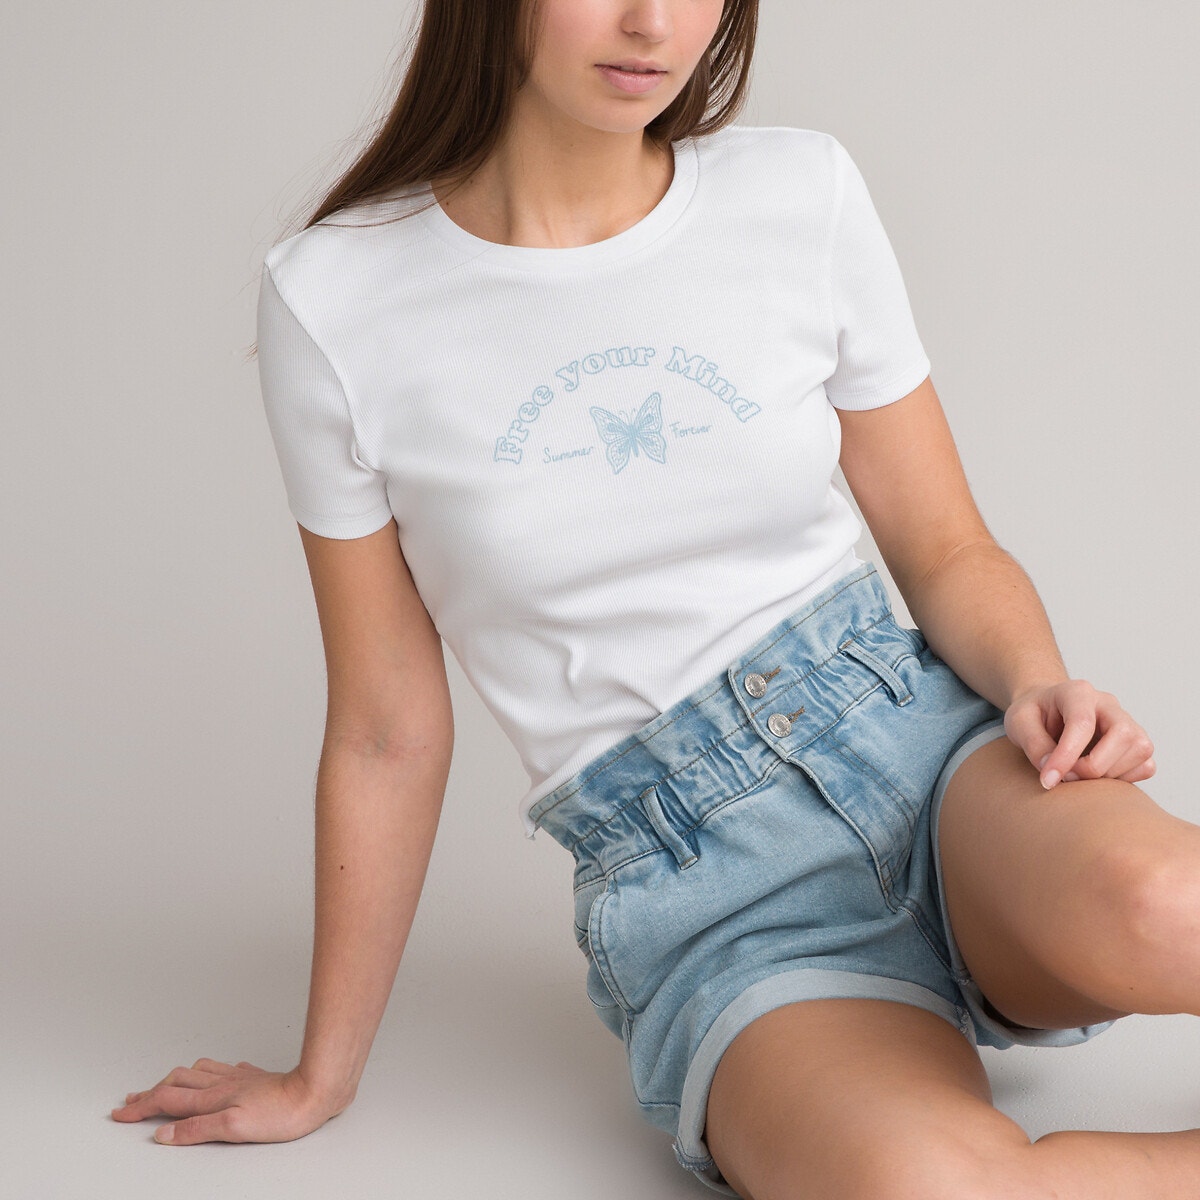 Μόδα > Παιδικά > Κορίτσι > T-shirt, αμάνικες μπλούζες > Κοντομάνικες μπλούζες Κοντομάνικο T-shirt με τυπωμένο μήνυμα μπροστά